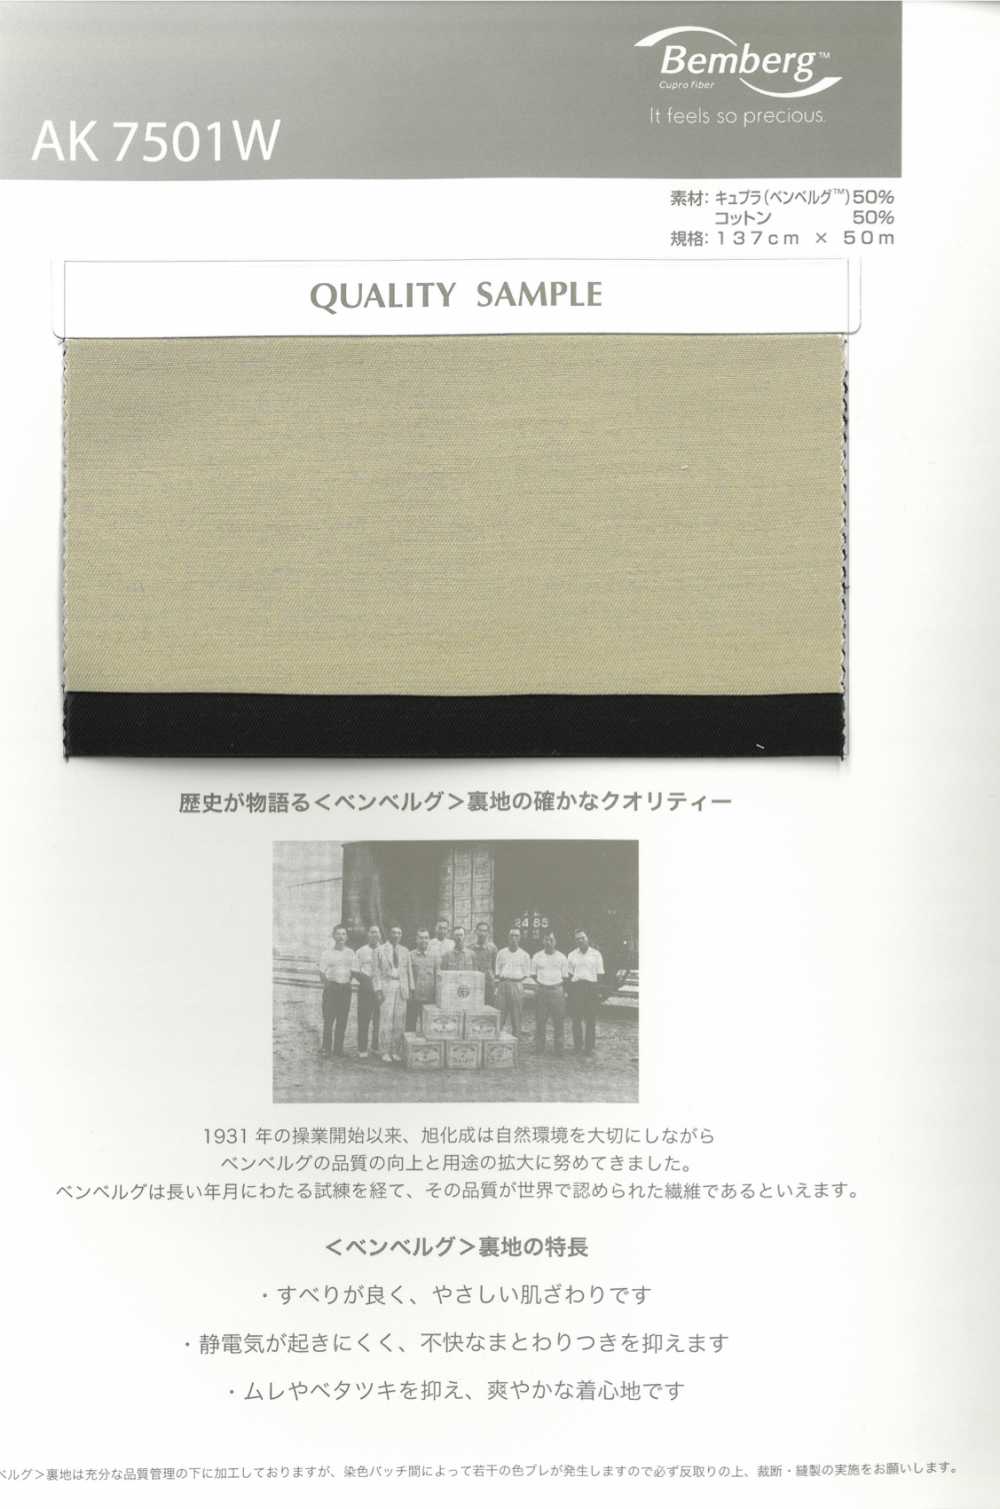 AK7501W Cupra Cotton Hỗn Hợp Vải Lót Dệt Asahi KASEI